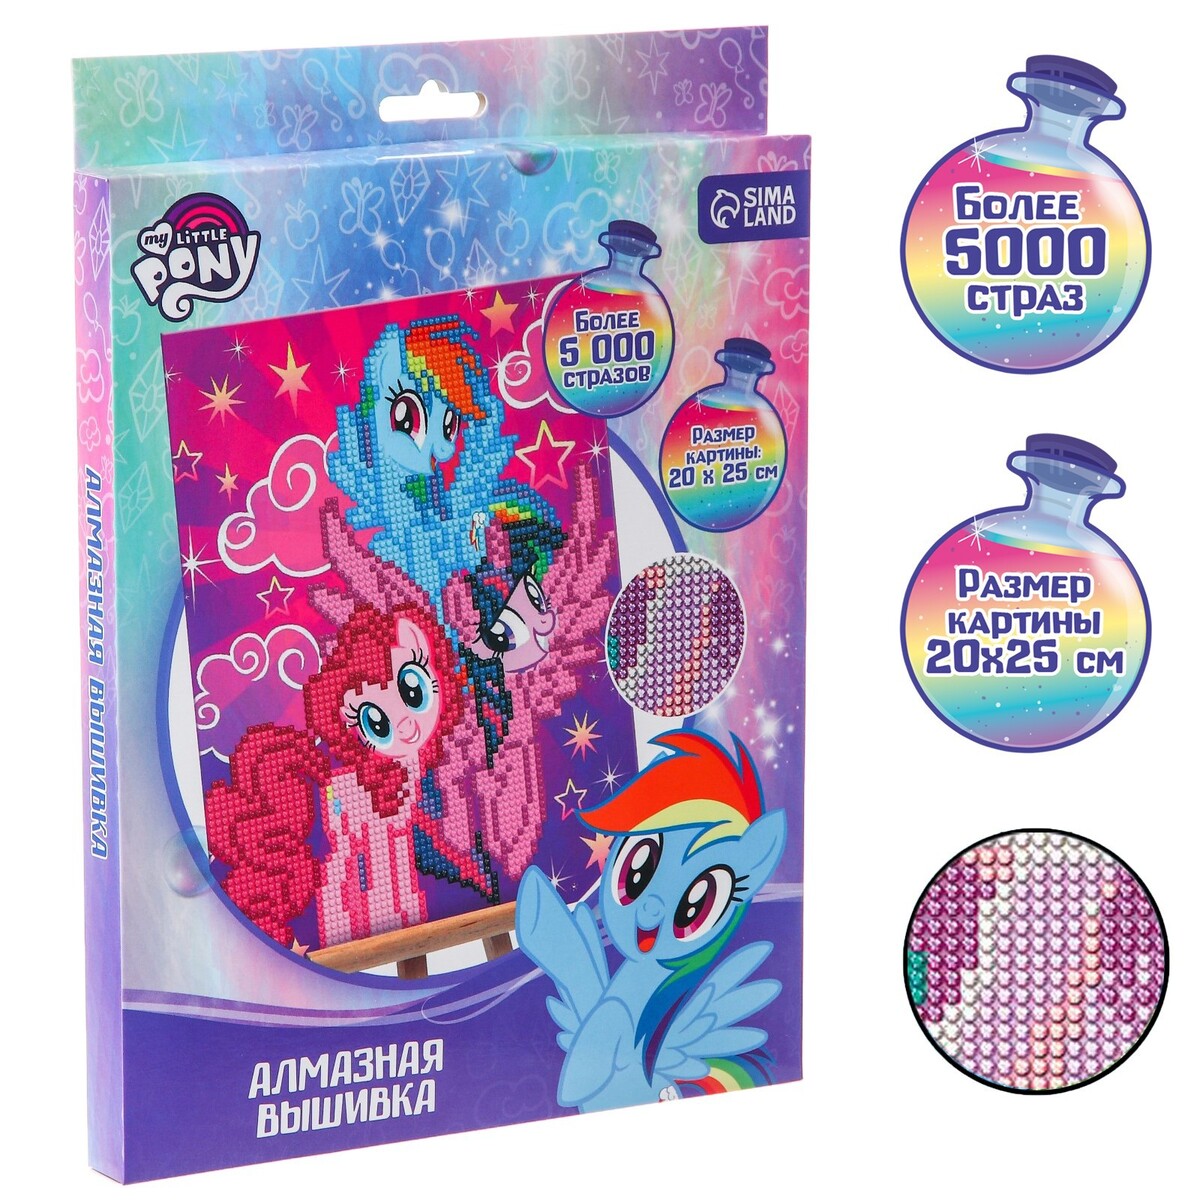 Алмазная мозаика для детей my little pony Hasbro